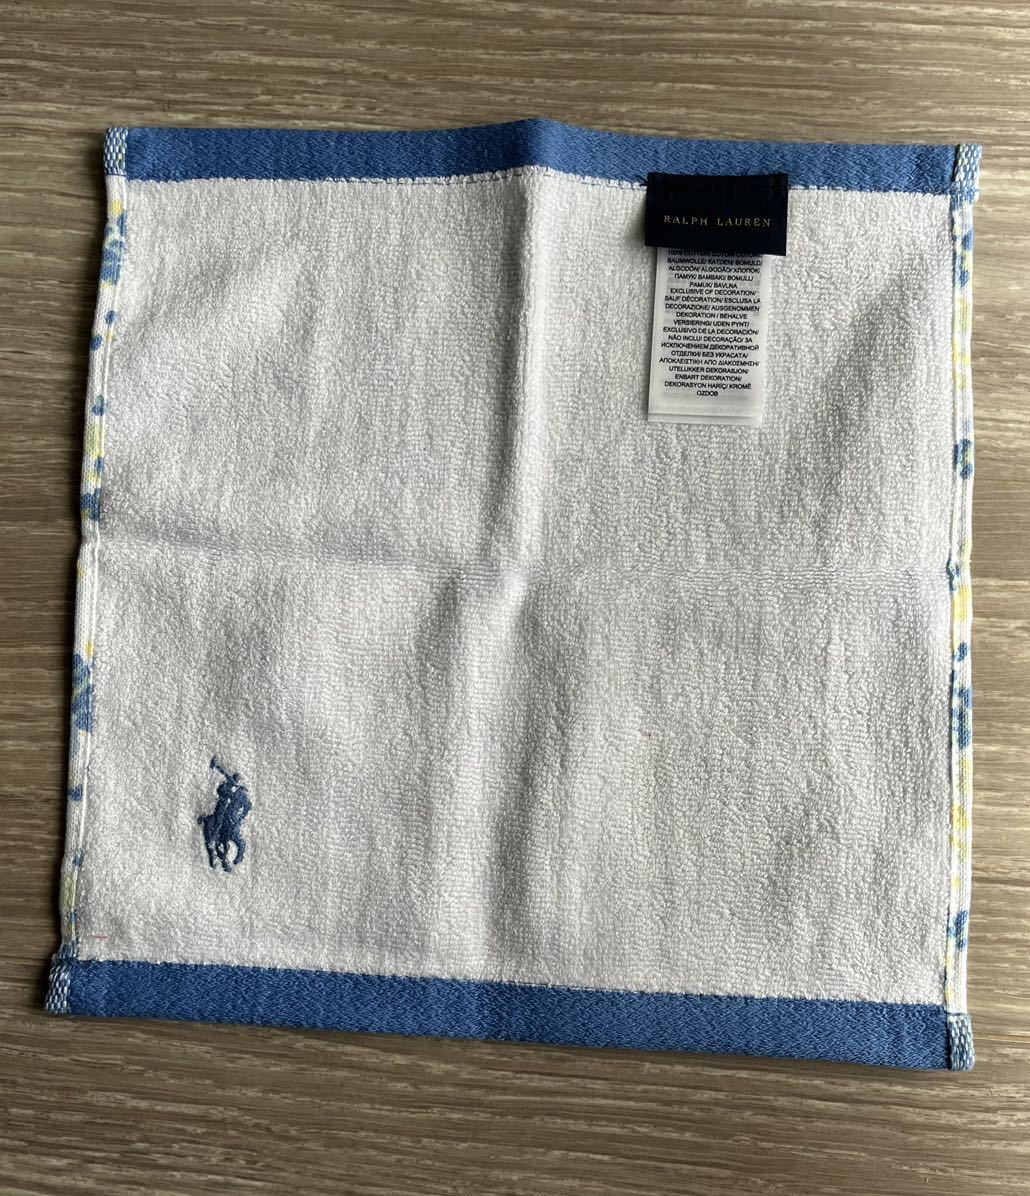  new goods RALPH LAUREN handkerchie towel gauze 6 pieces set 